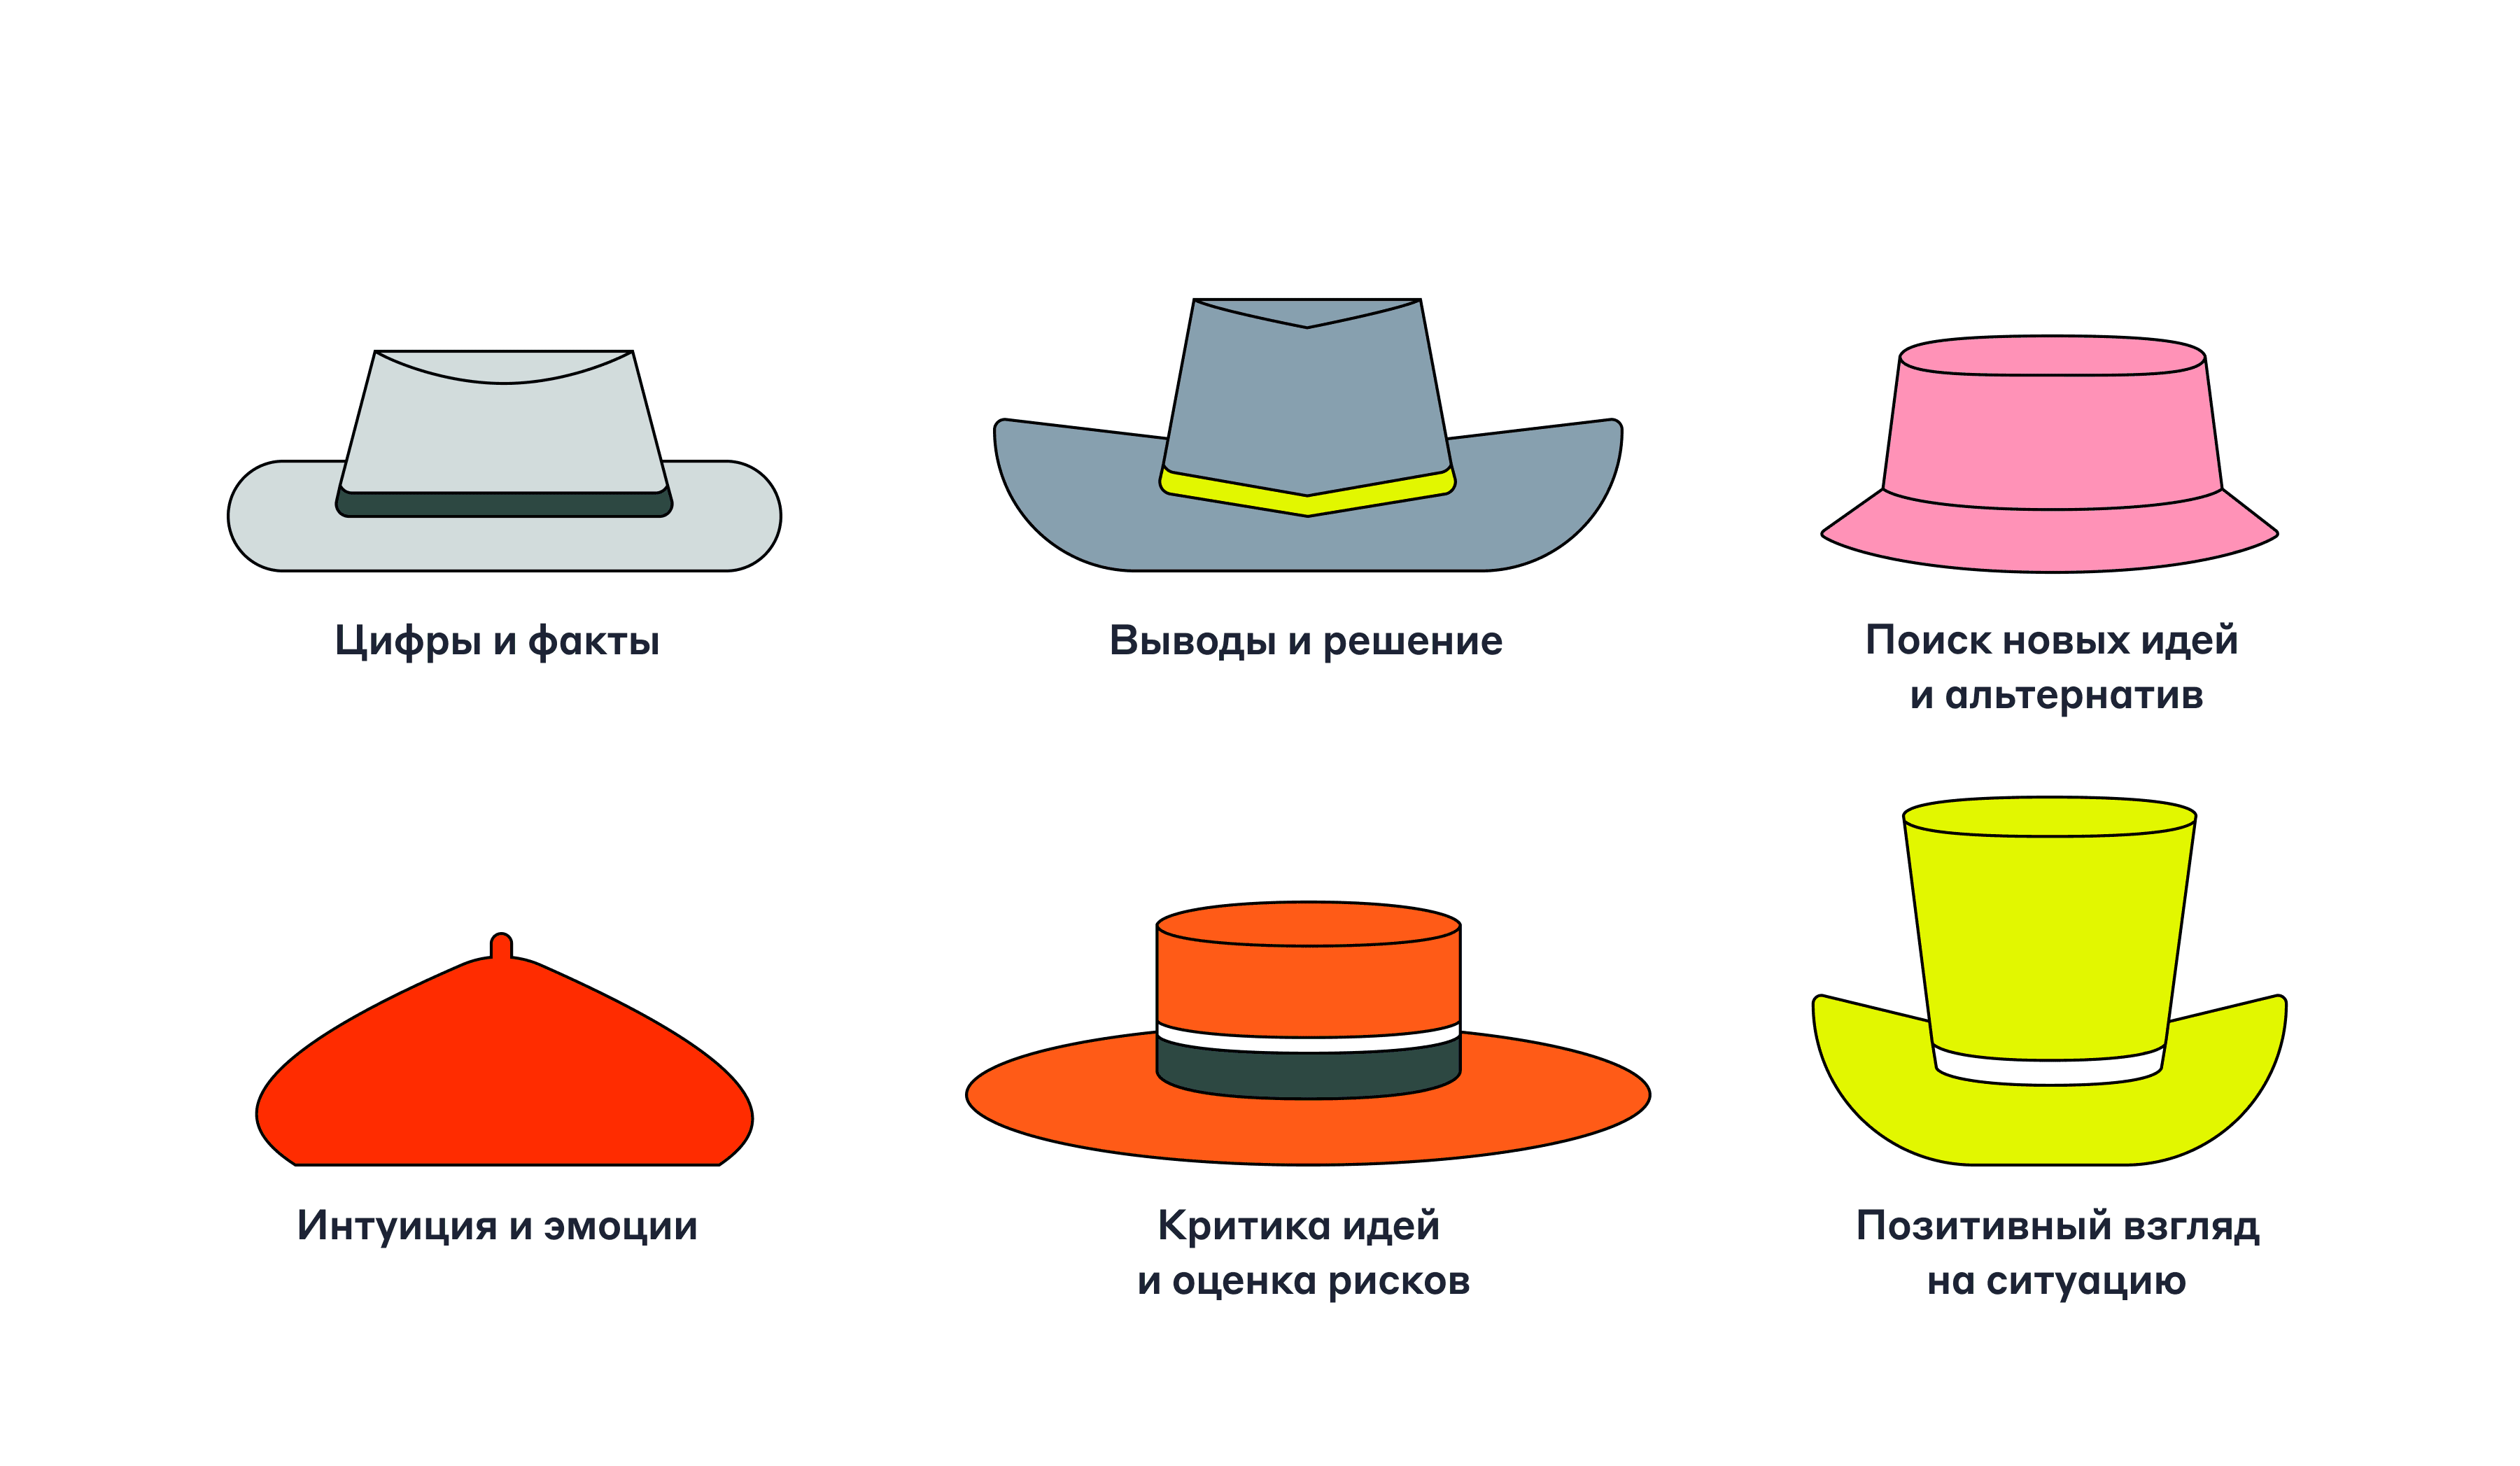 Метод «Шесть шляп мышления»